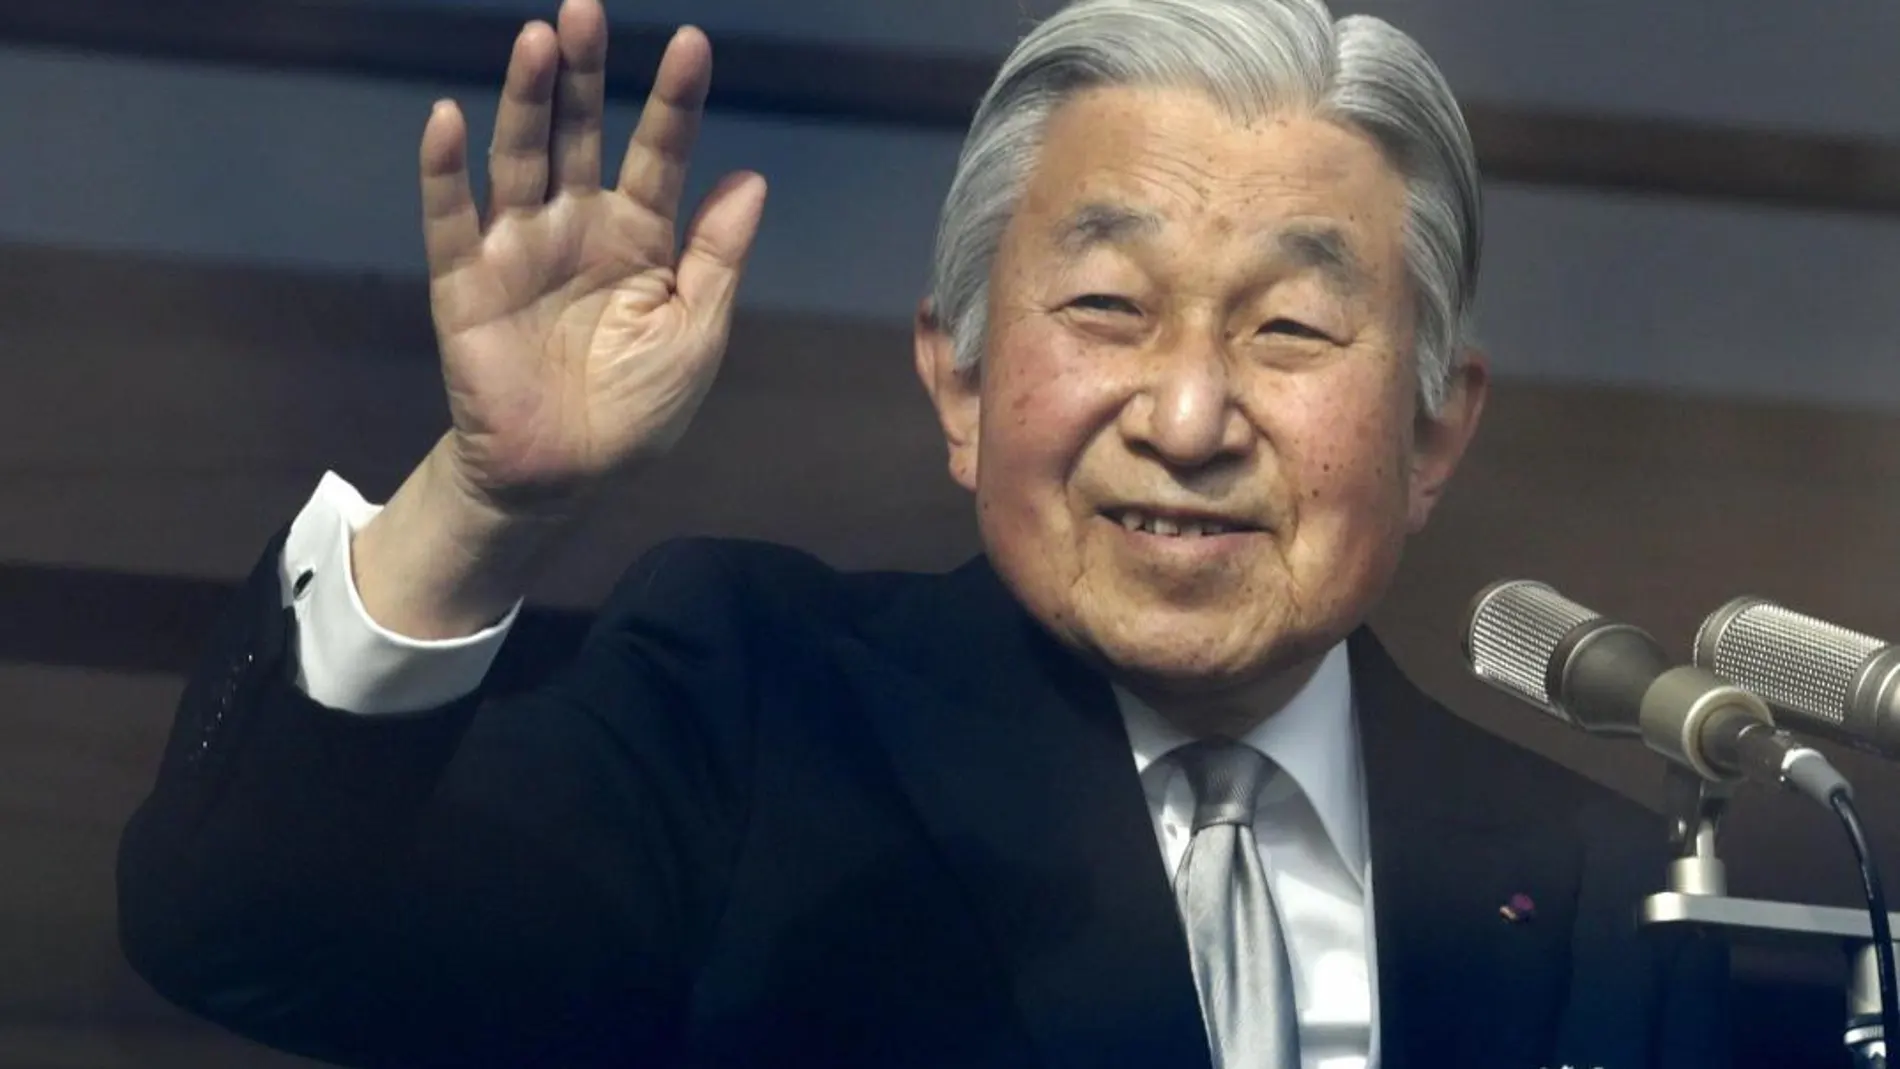 Fotografía de archivo del 23 de diciembre de 2016 que muestra al emperador de de Japón, Akihito, saludando durante la celebración de su cumpleaños 83